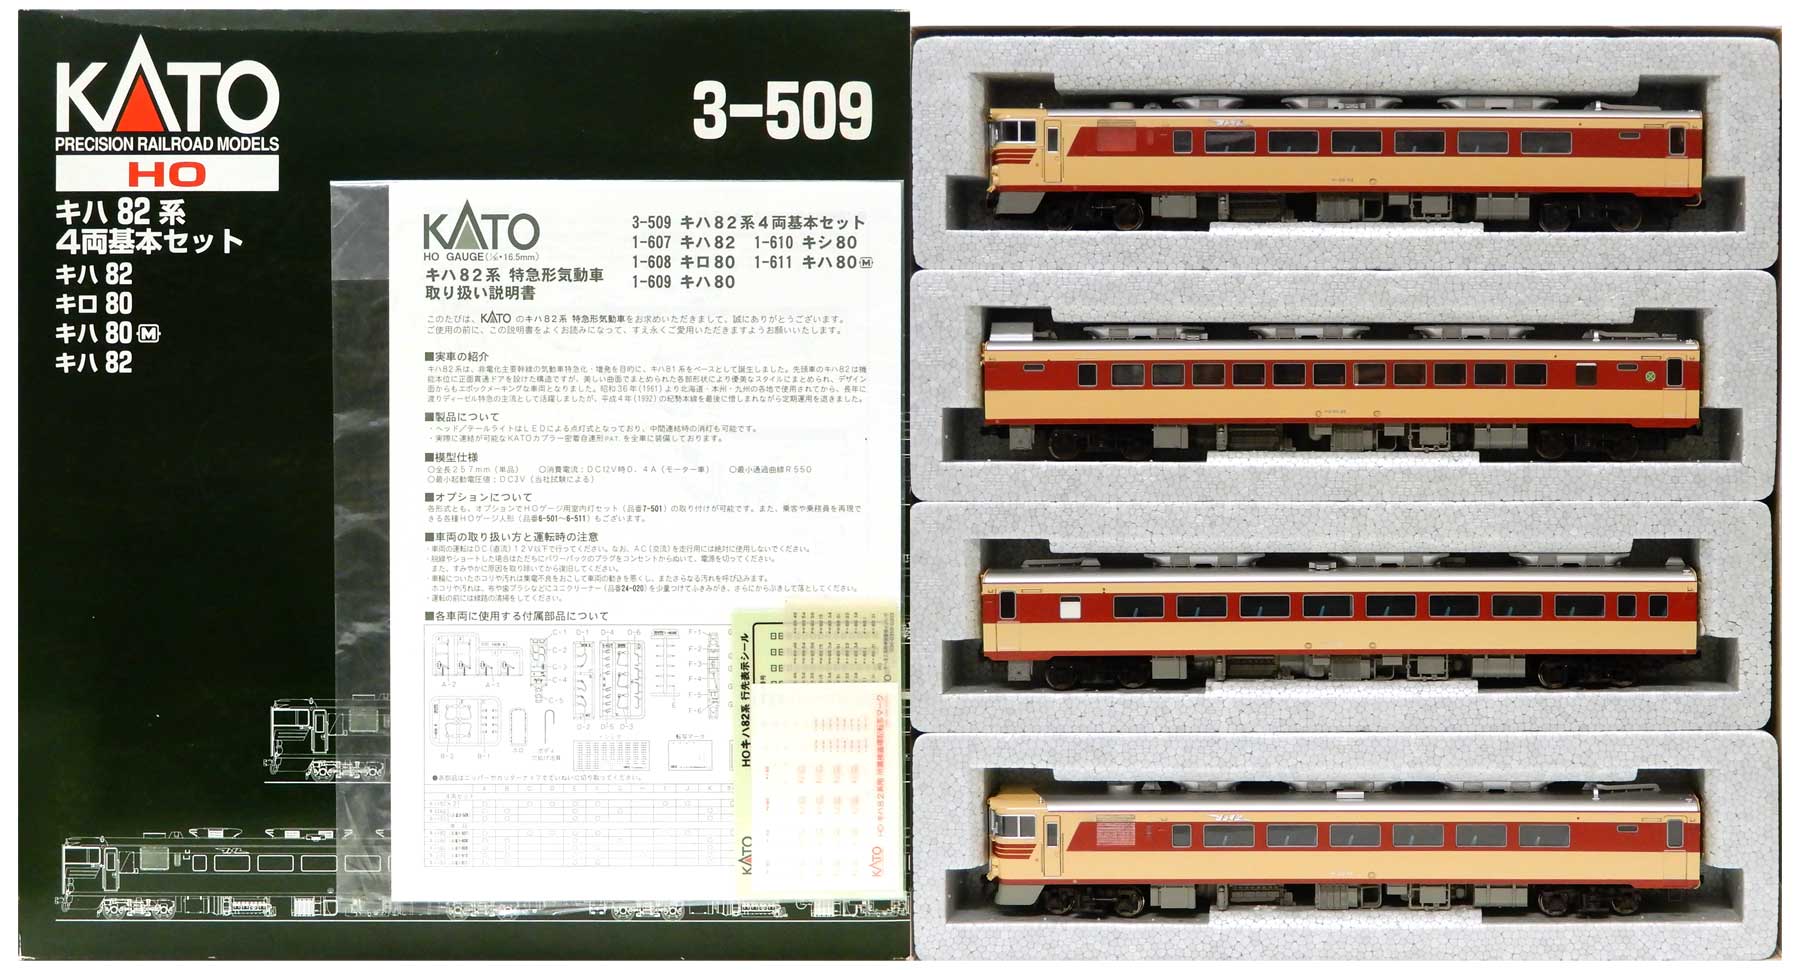 KATO 608 キハ80 609 キロ80 セット売り - 鉄道模型